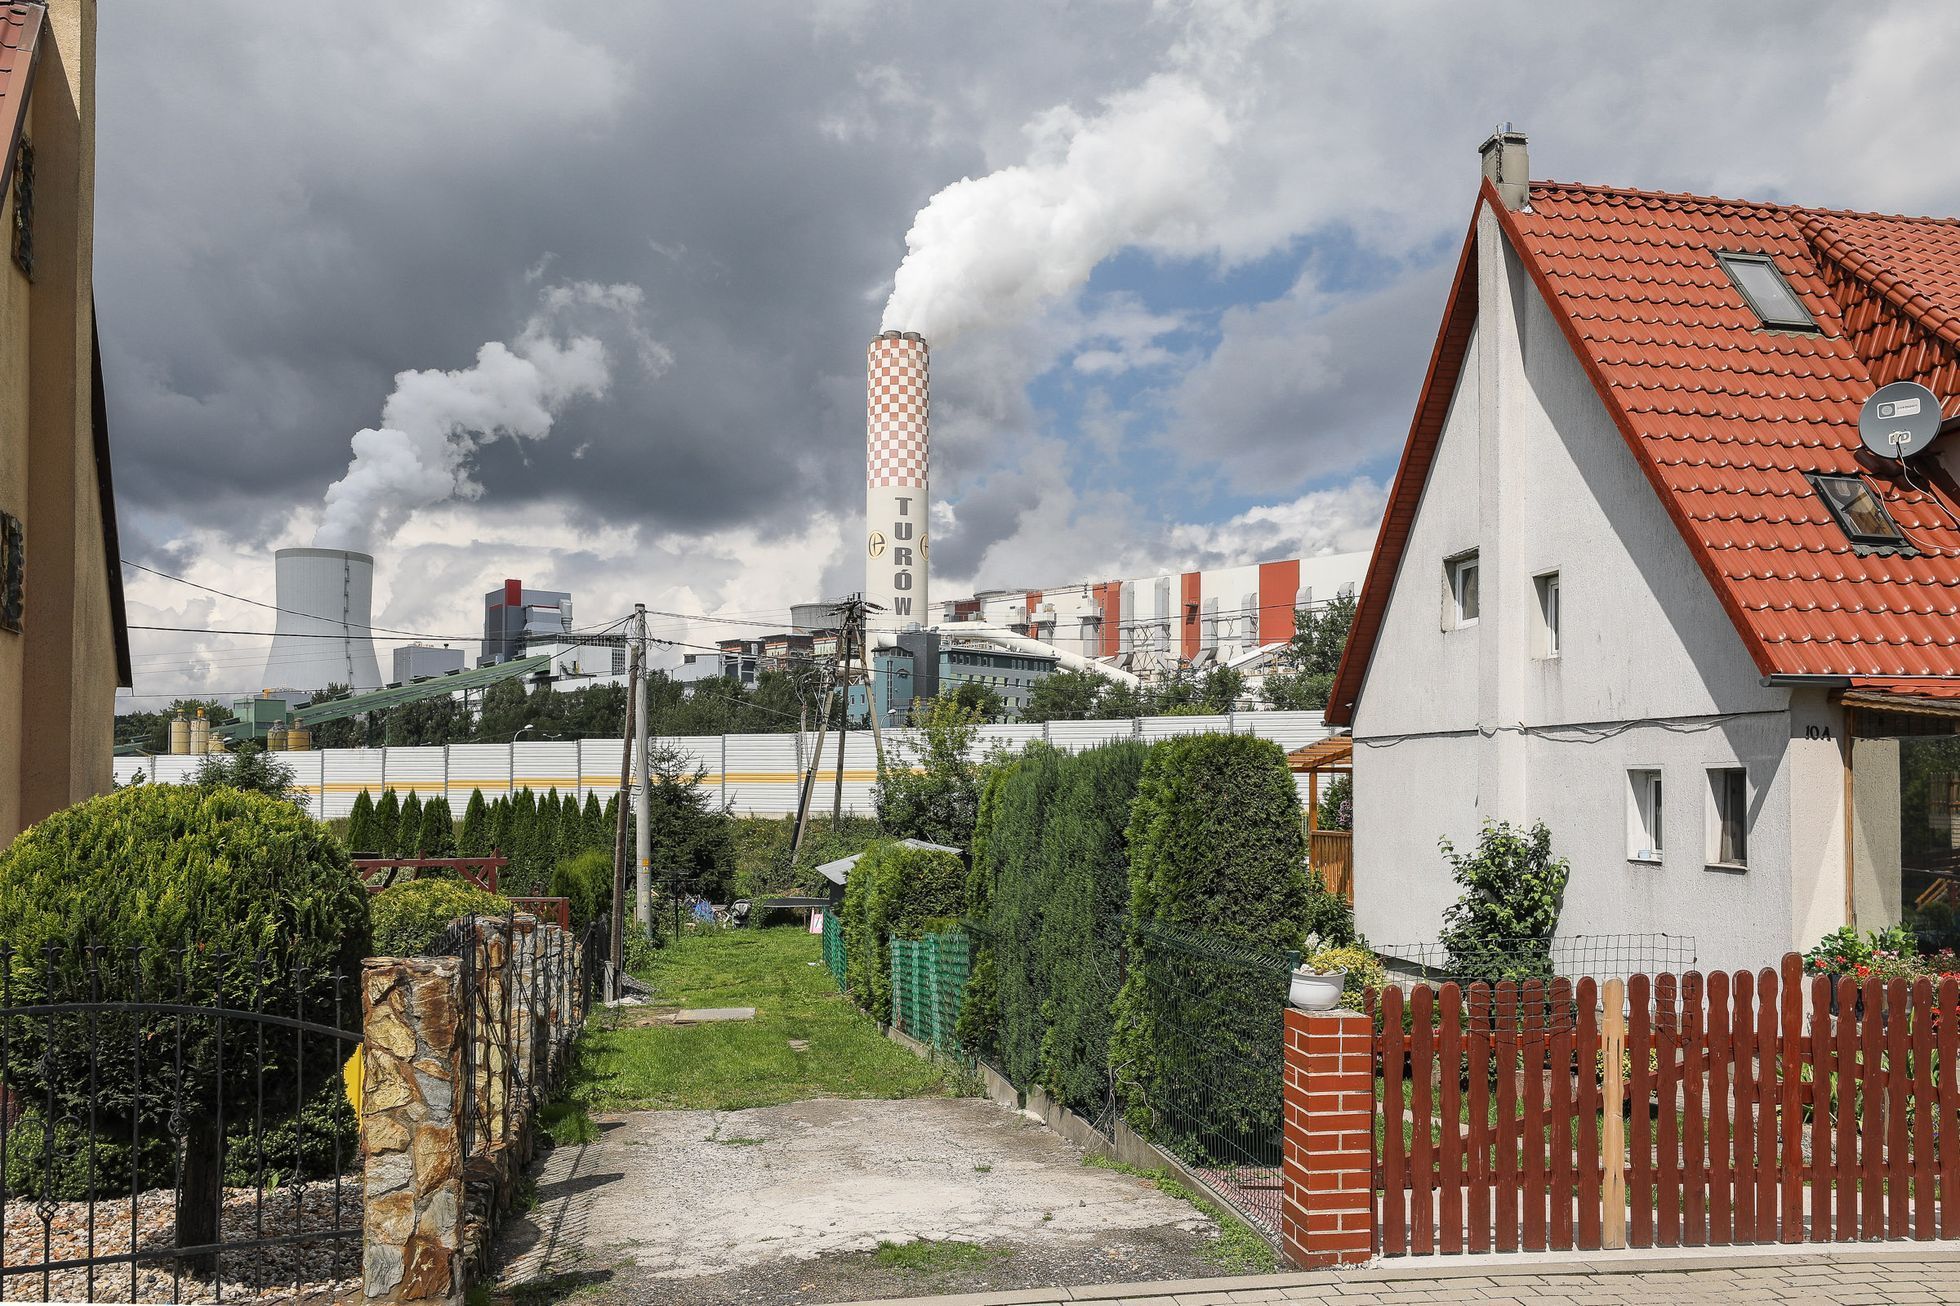 Důl Turow, Bogatynia, hnědé uhlí, lom, těžba, průmysl, znečištění, PGE, Polsko